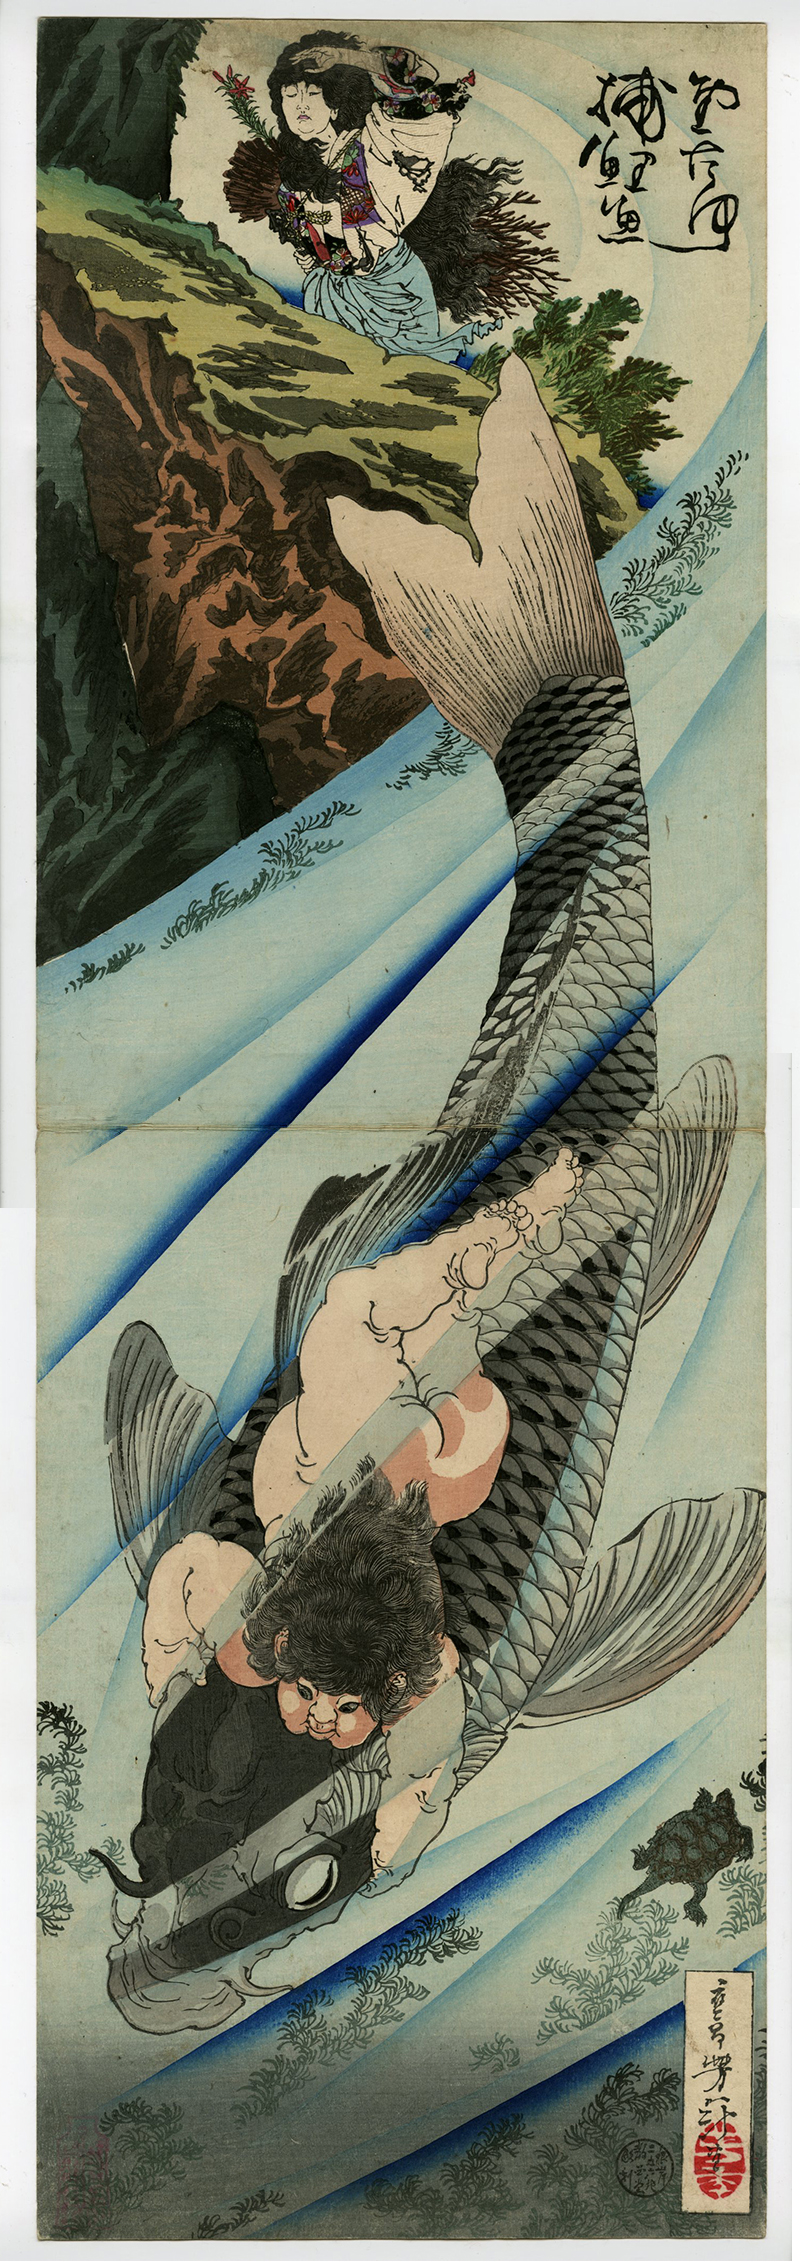 芳年(よしとし) - 金太郎捕鯉図 - 浮世絵販売 - 浮世絵ぎゃらりい秋華洞